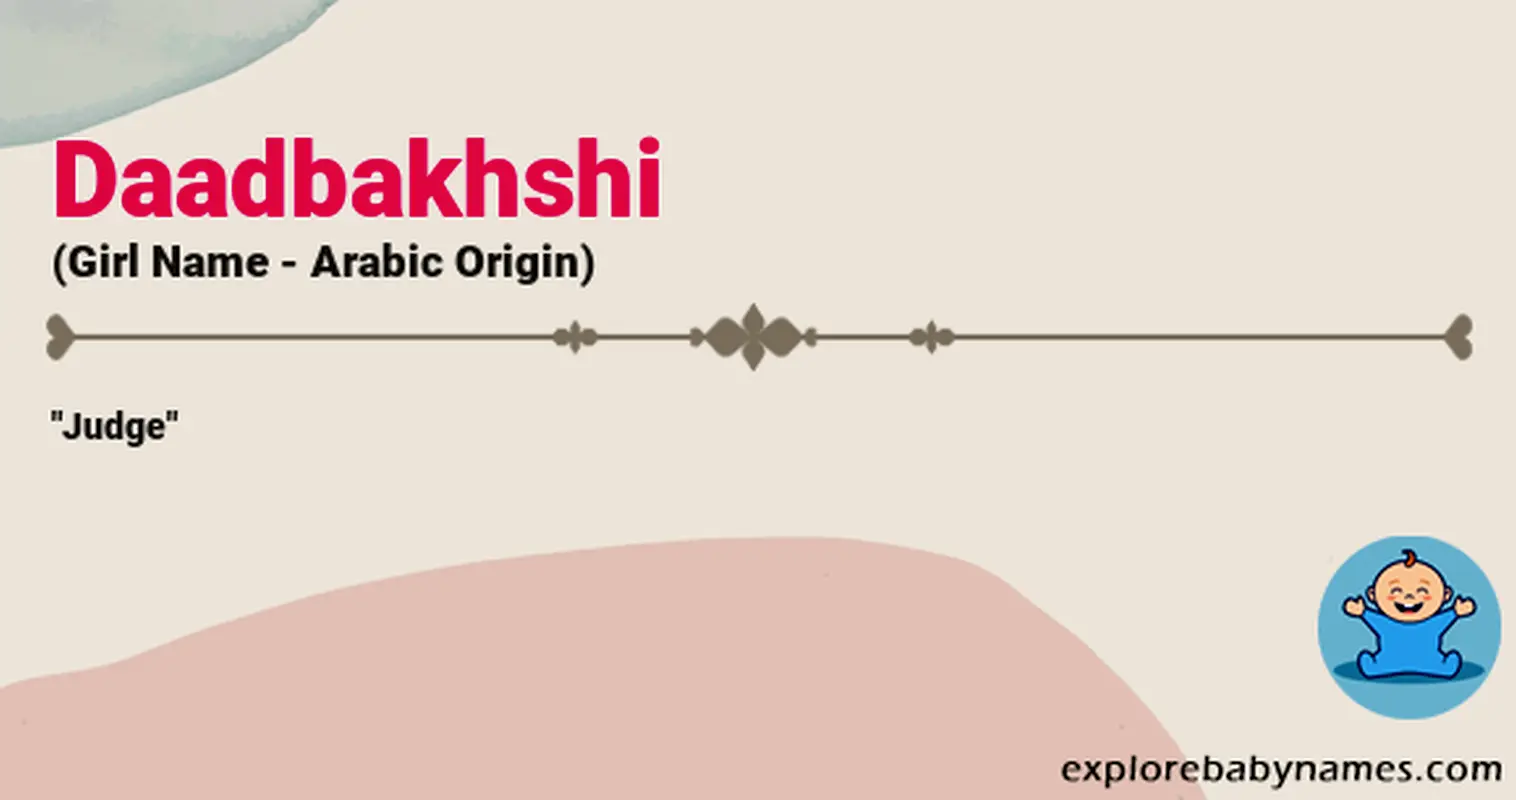 Meaning of Daadbakhshi